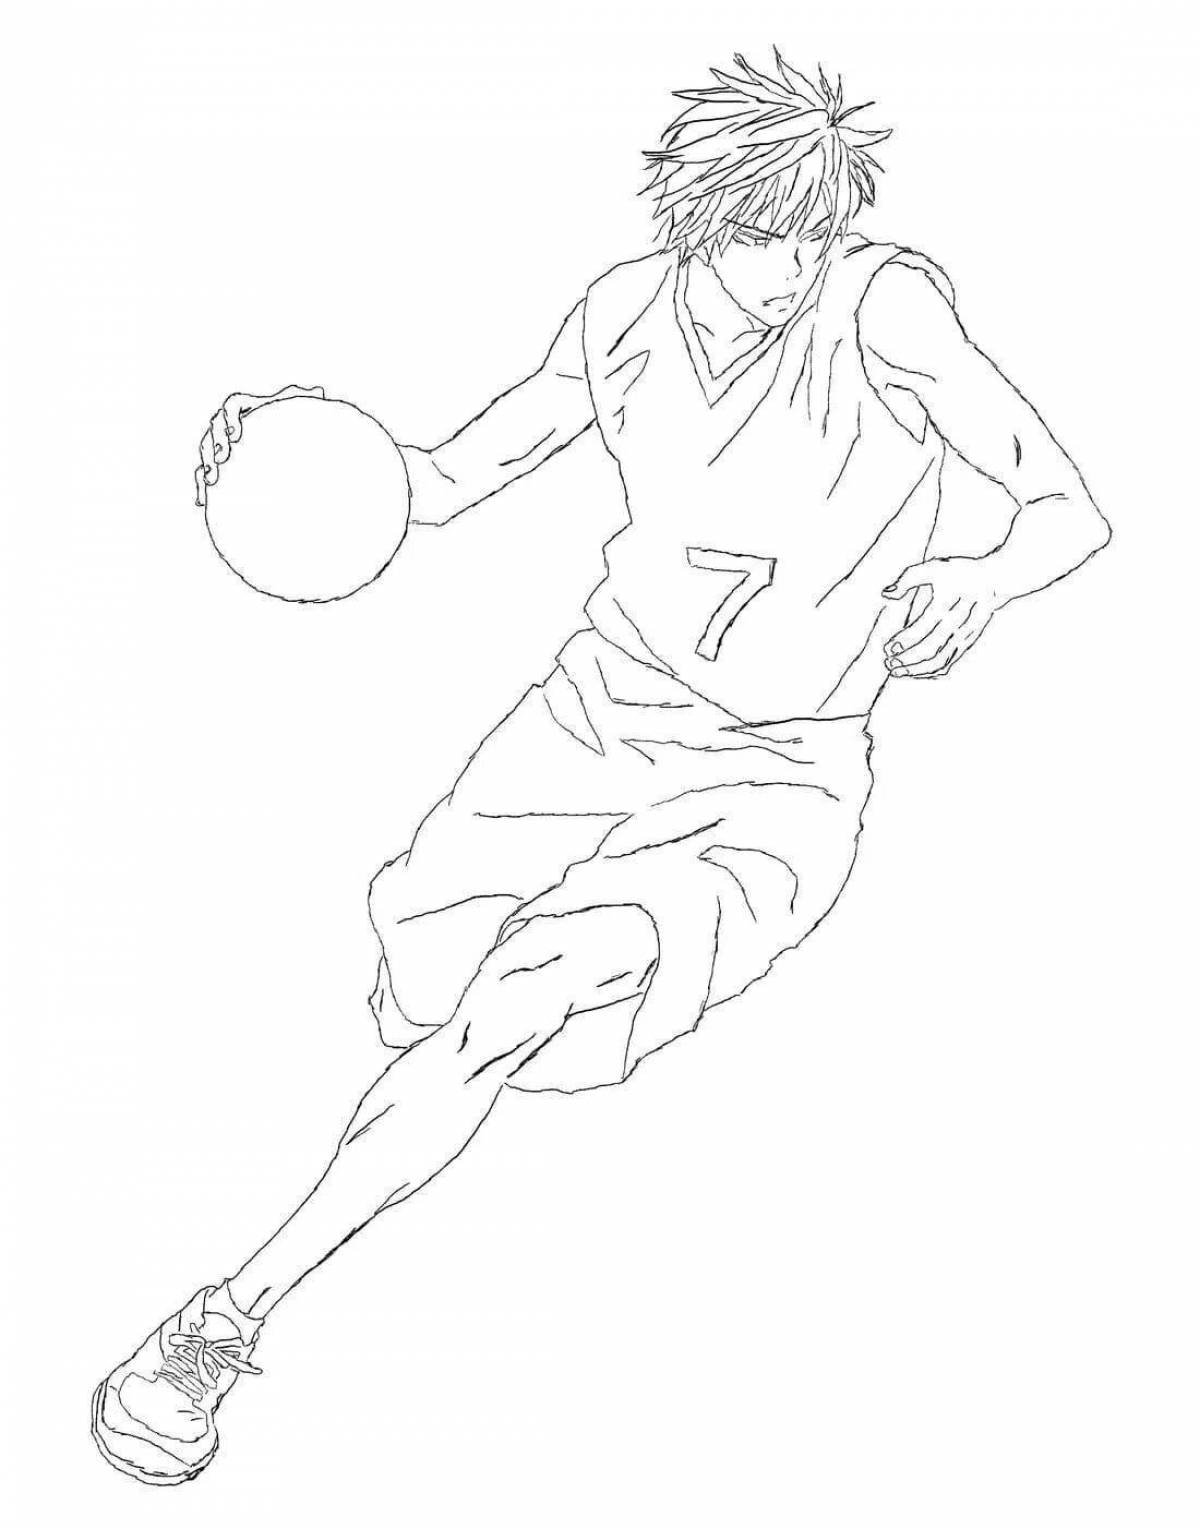 Kuroko's mystical basketball coloring page